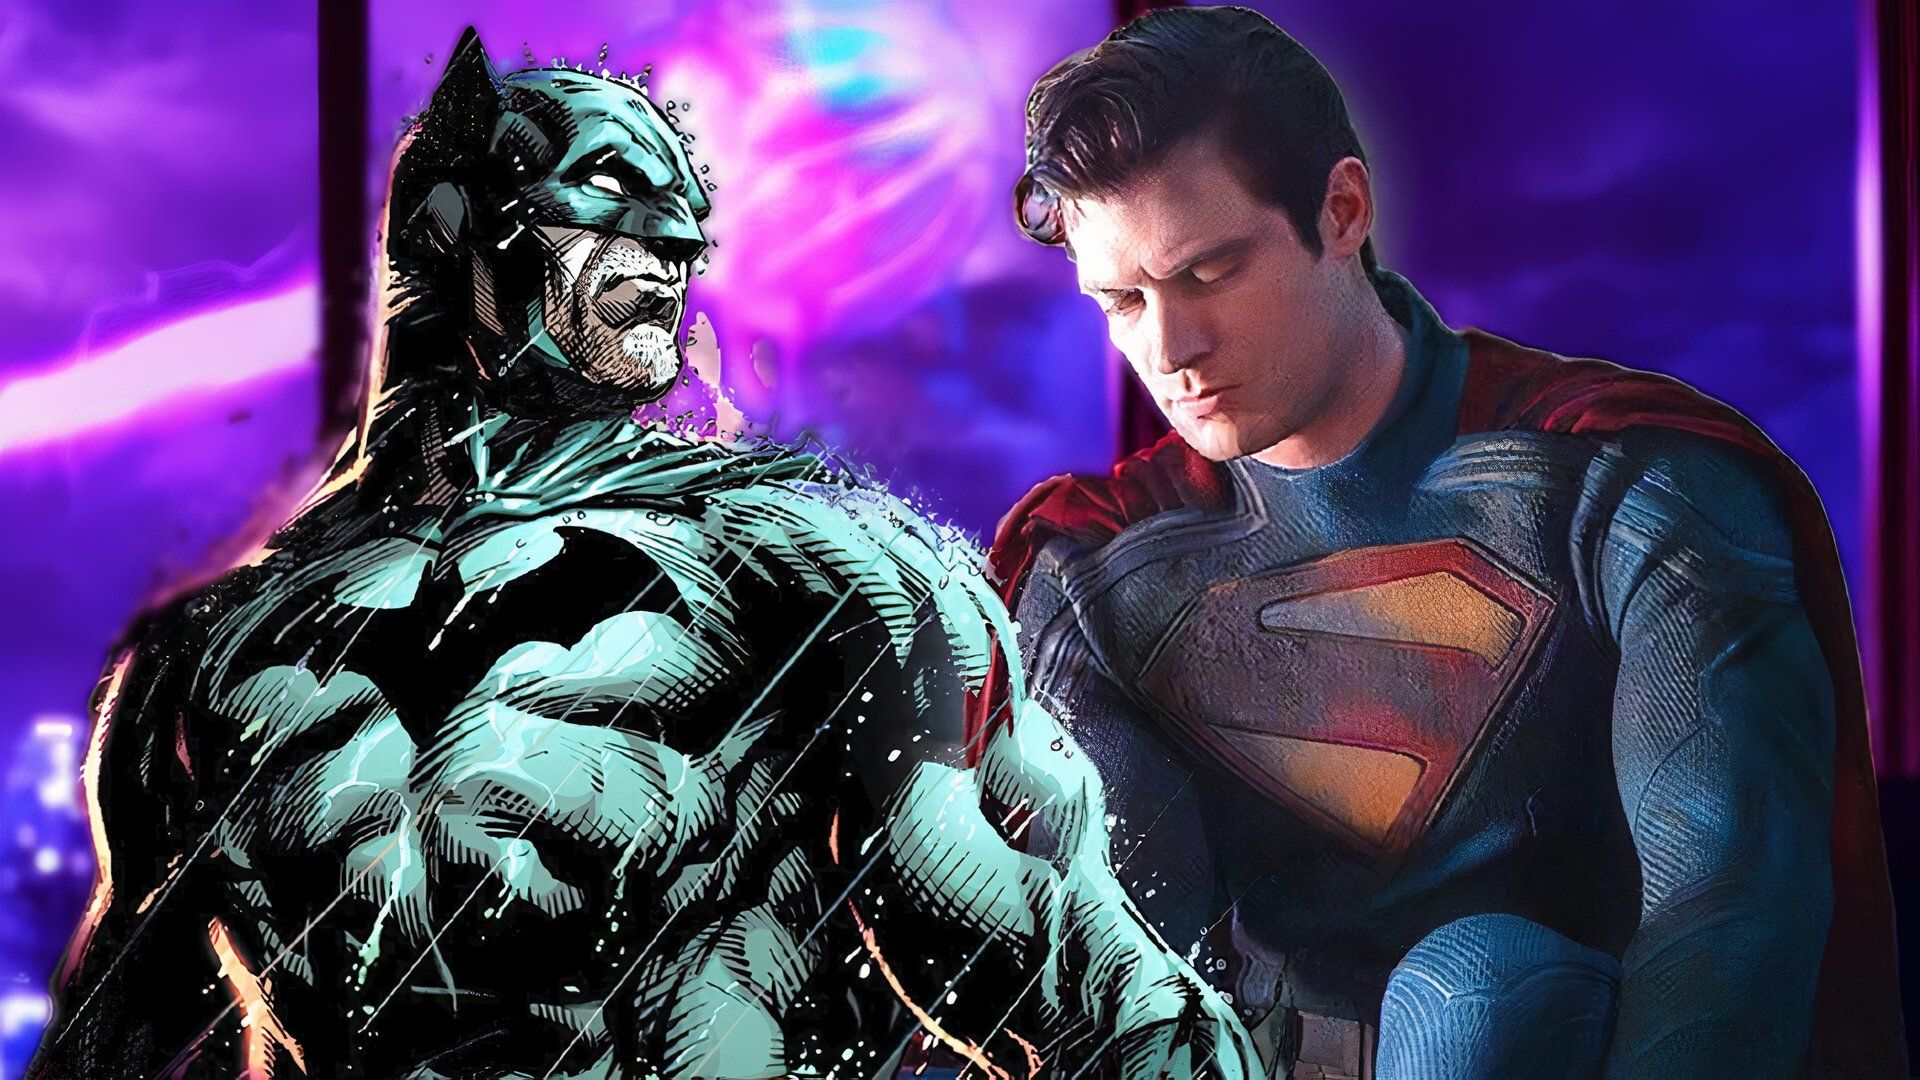 David Corenswet Suits Up as Superman Alongside Fan-Favorite Choice for Batman in New Art